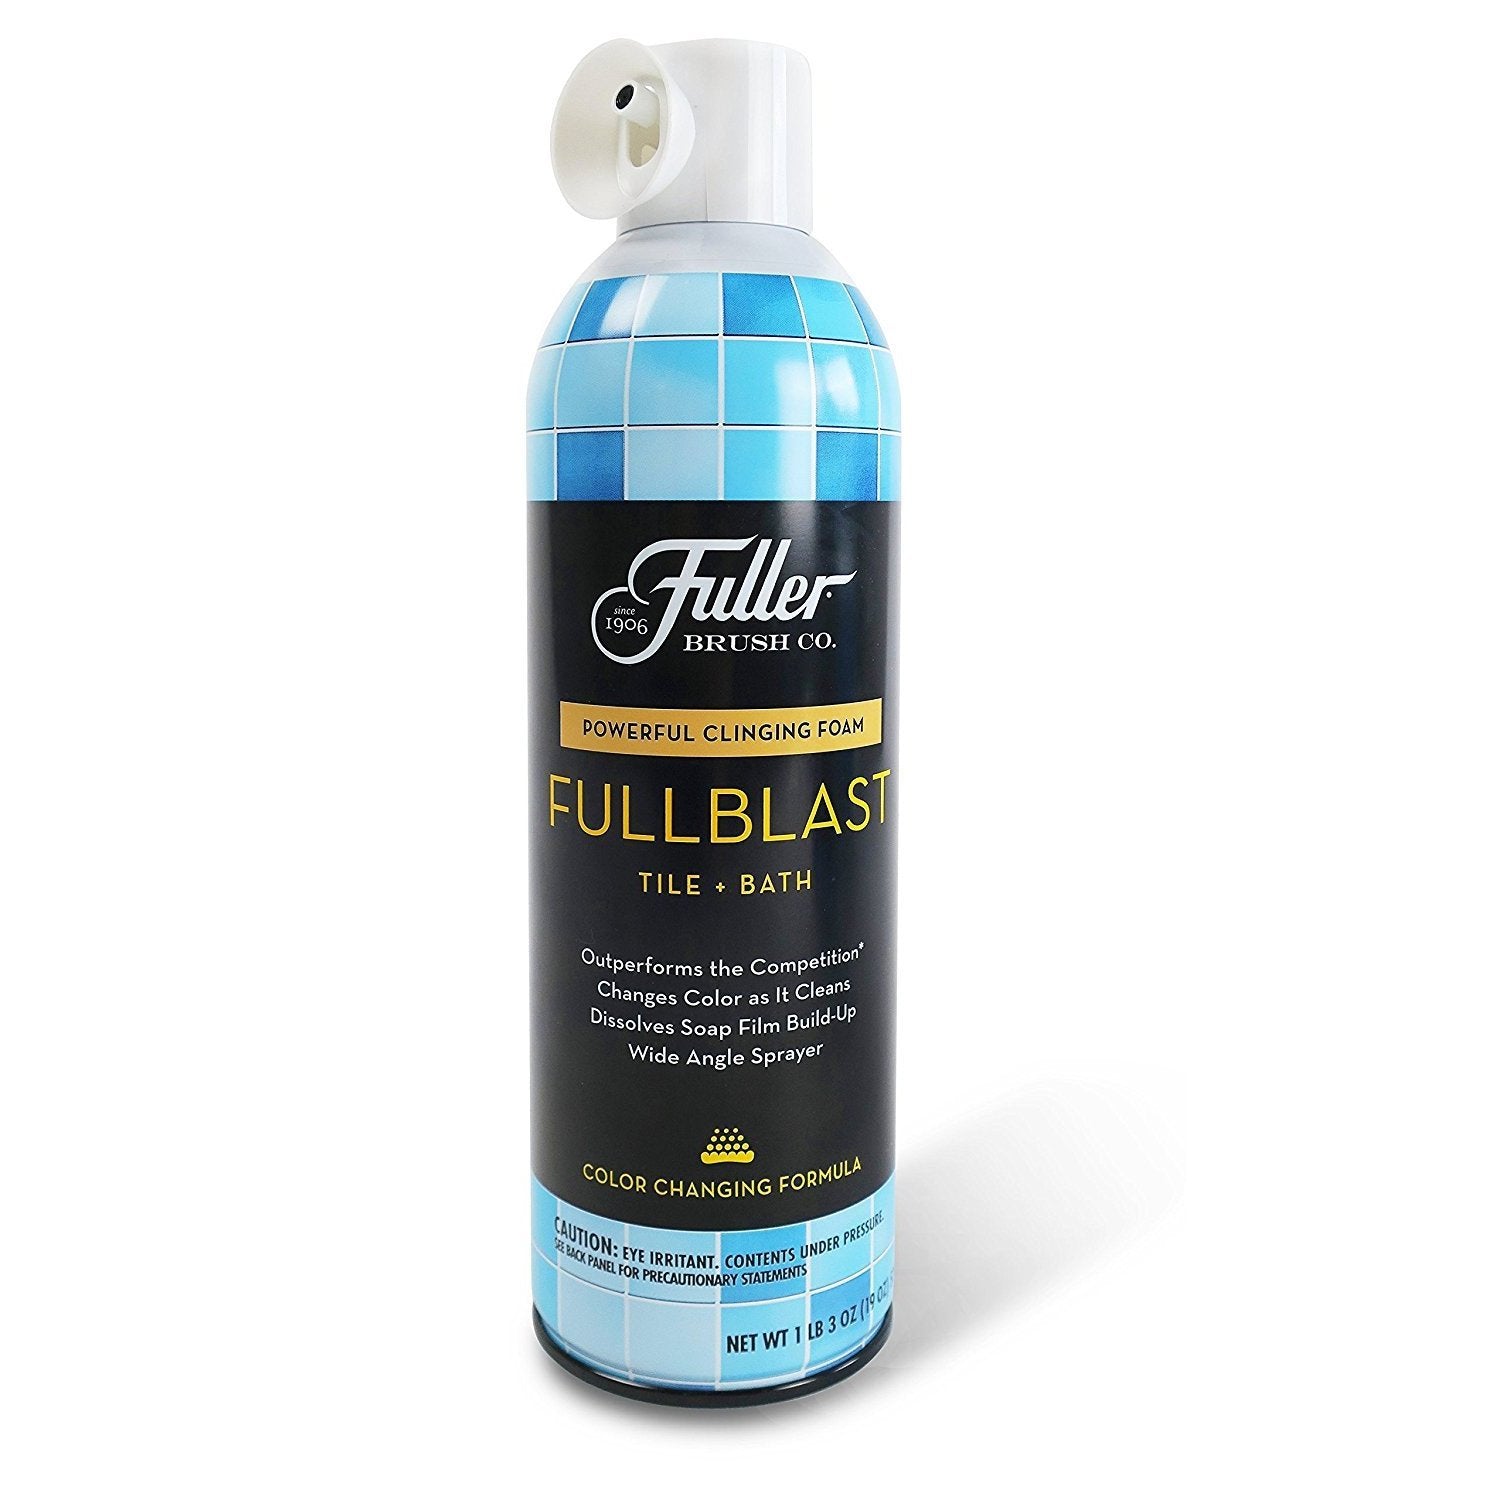 https://fuller.com/a/l/es/cdn/shop/products/fuller-brush-fullblast-tile-bath-cleaner-cleaning-agents_1500x1500.jpg?v=1596014592